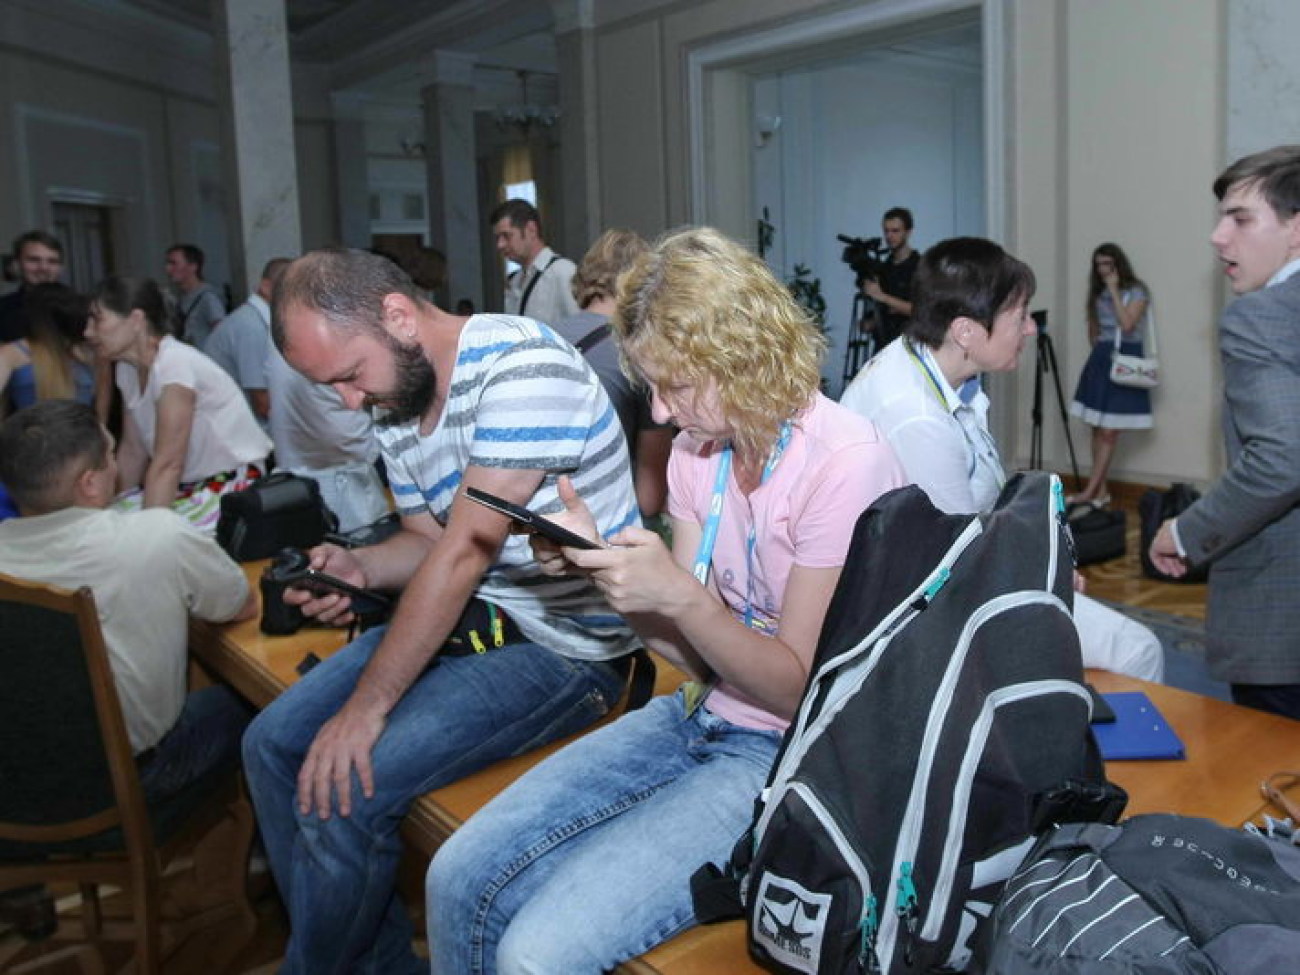 Тяжела и неказиста&#8230; как журналисты ждут известий от депутатов, 31 июля 2014г.